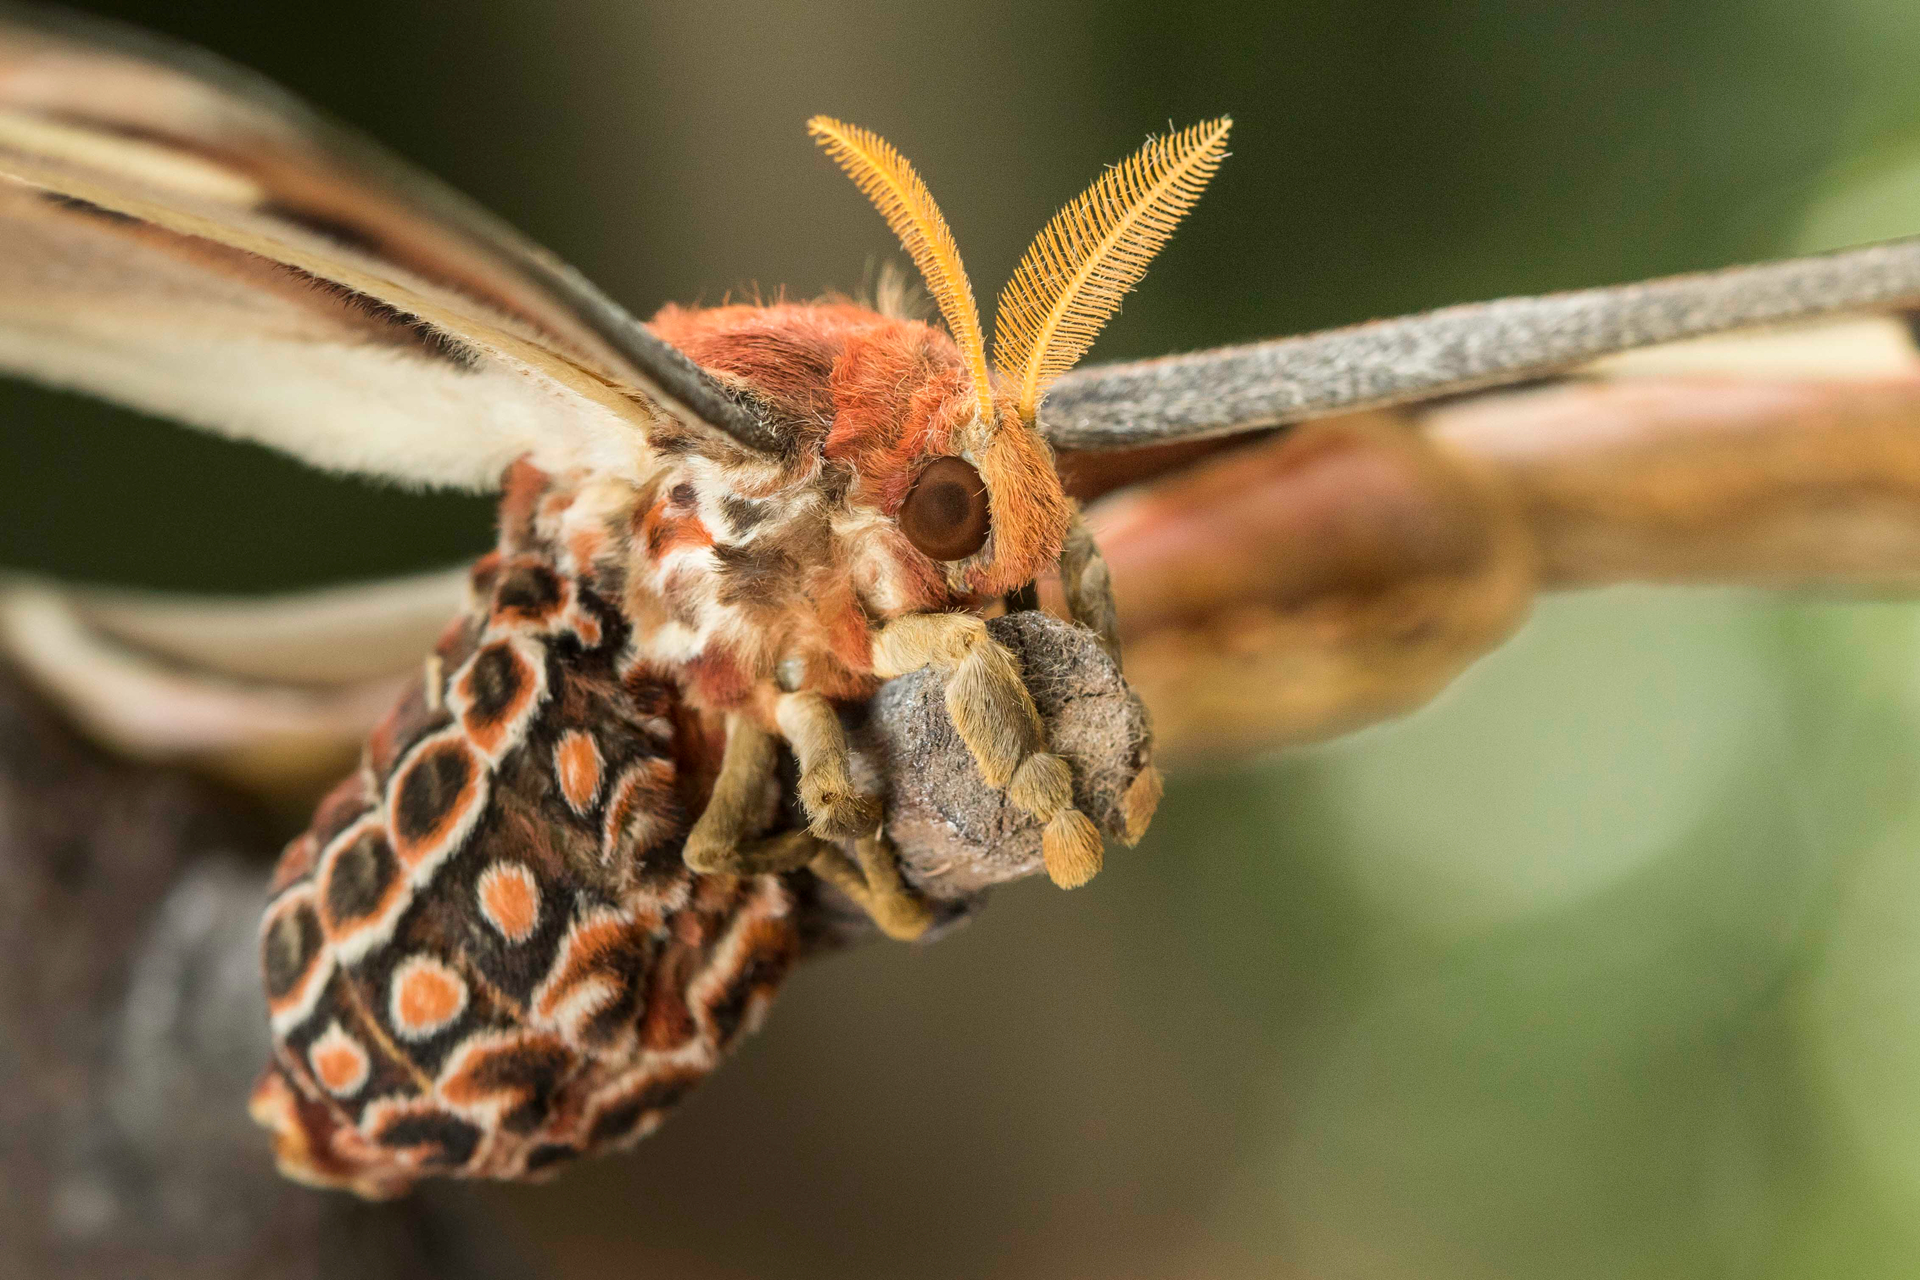 阿特拉斯蛾寿命非常短,而且没有嘴,东南亚特有的飞蛾